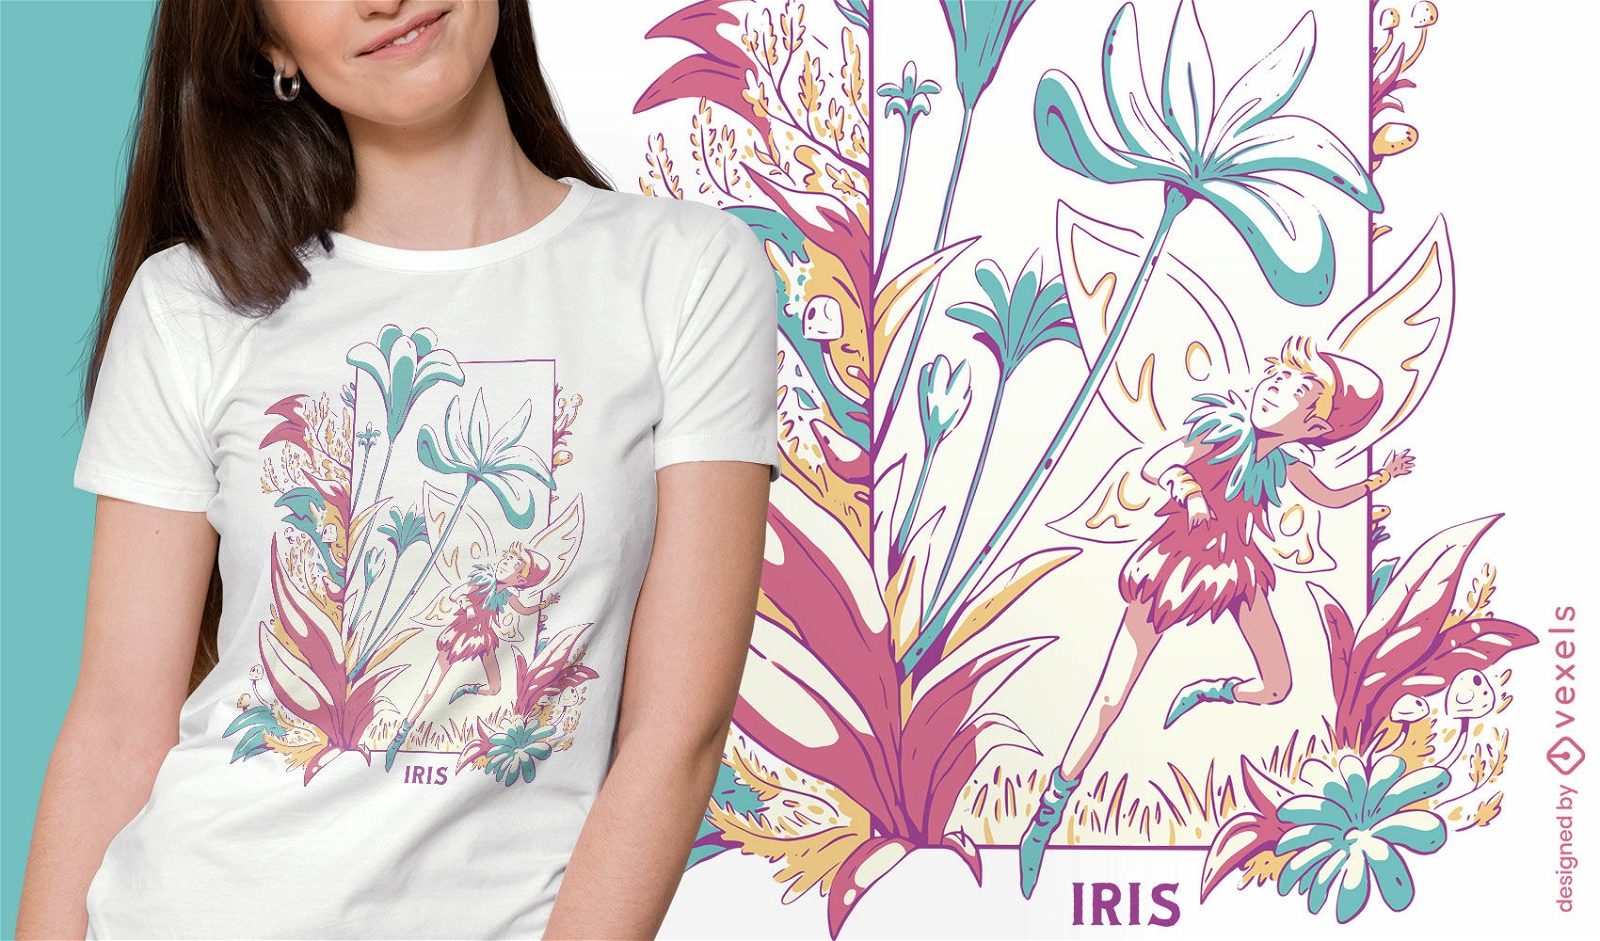 Hada alada en diseño de camiseta de campo de flores.